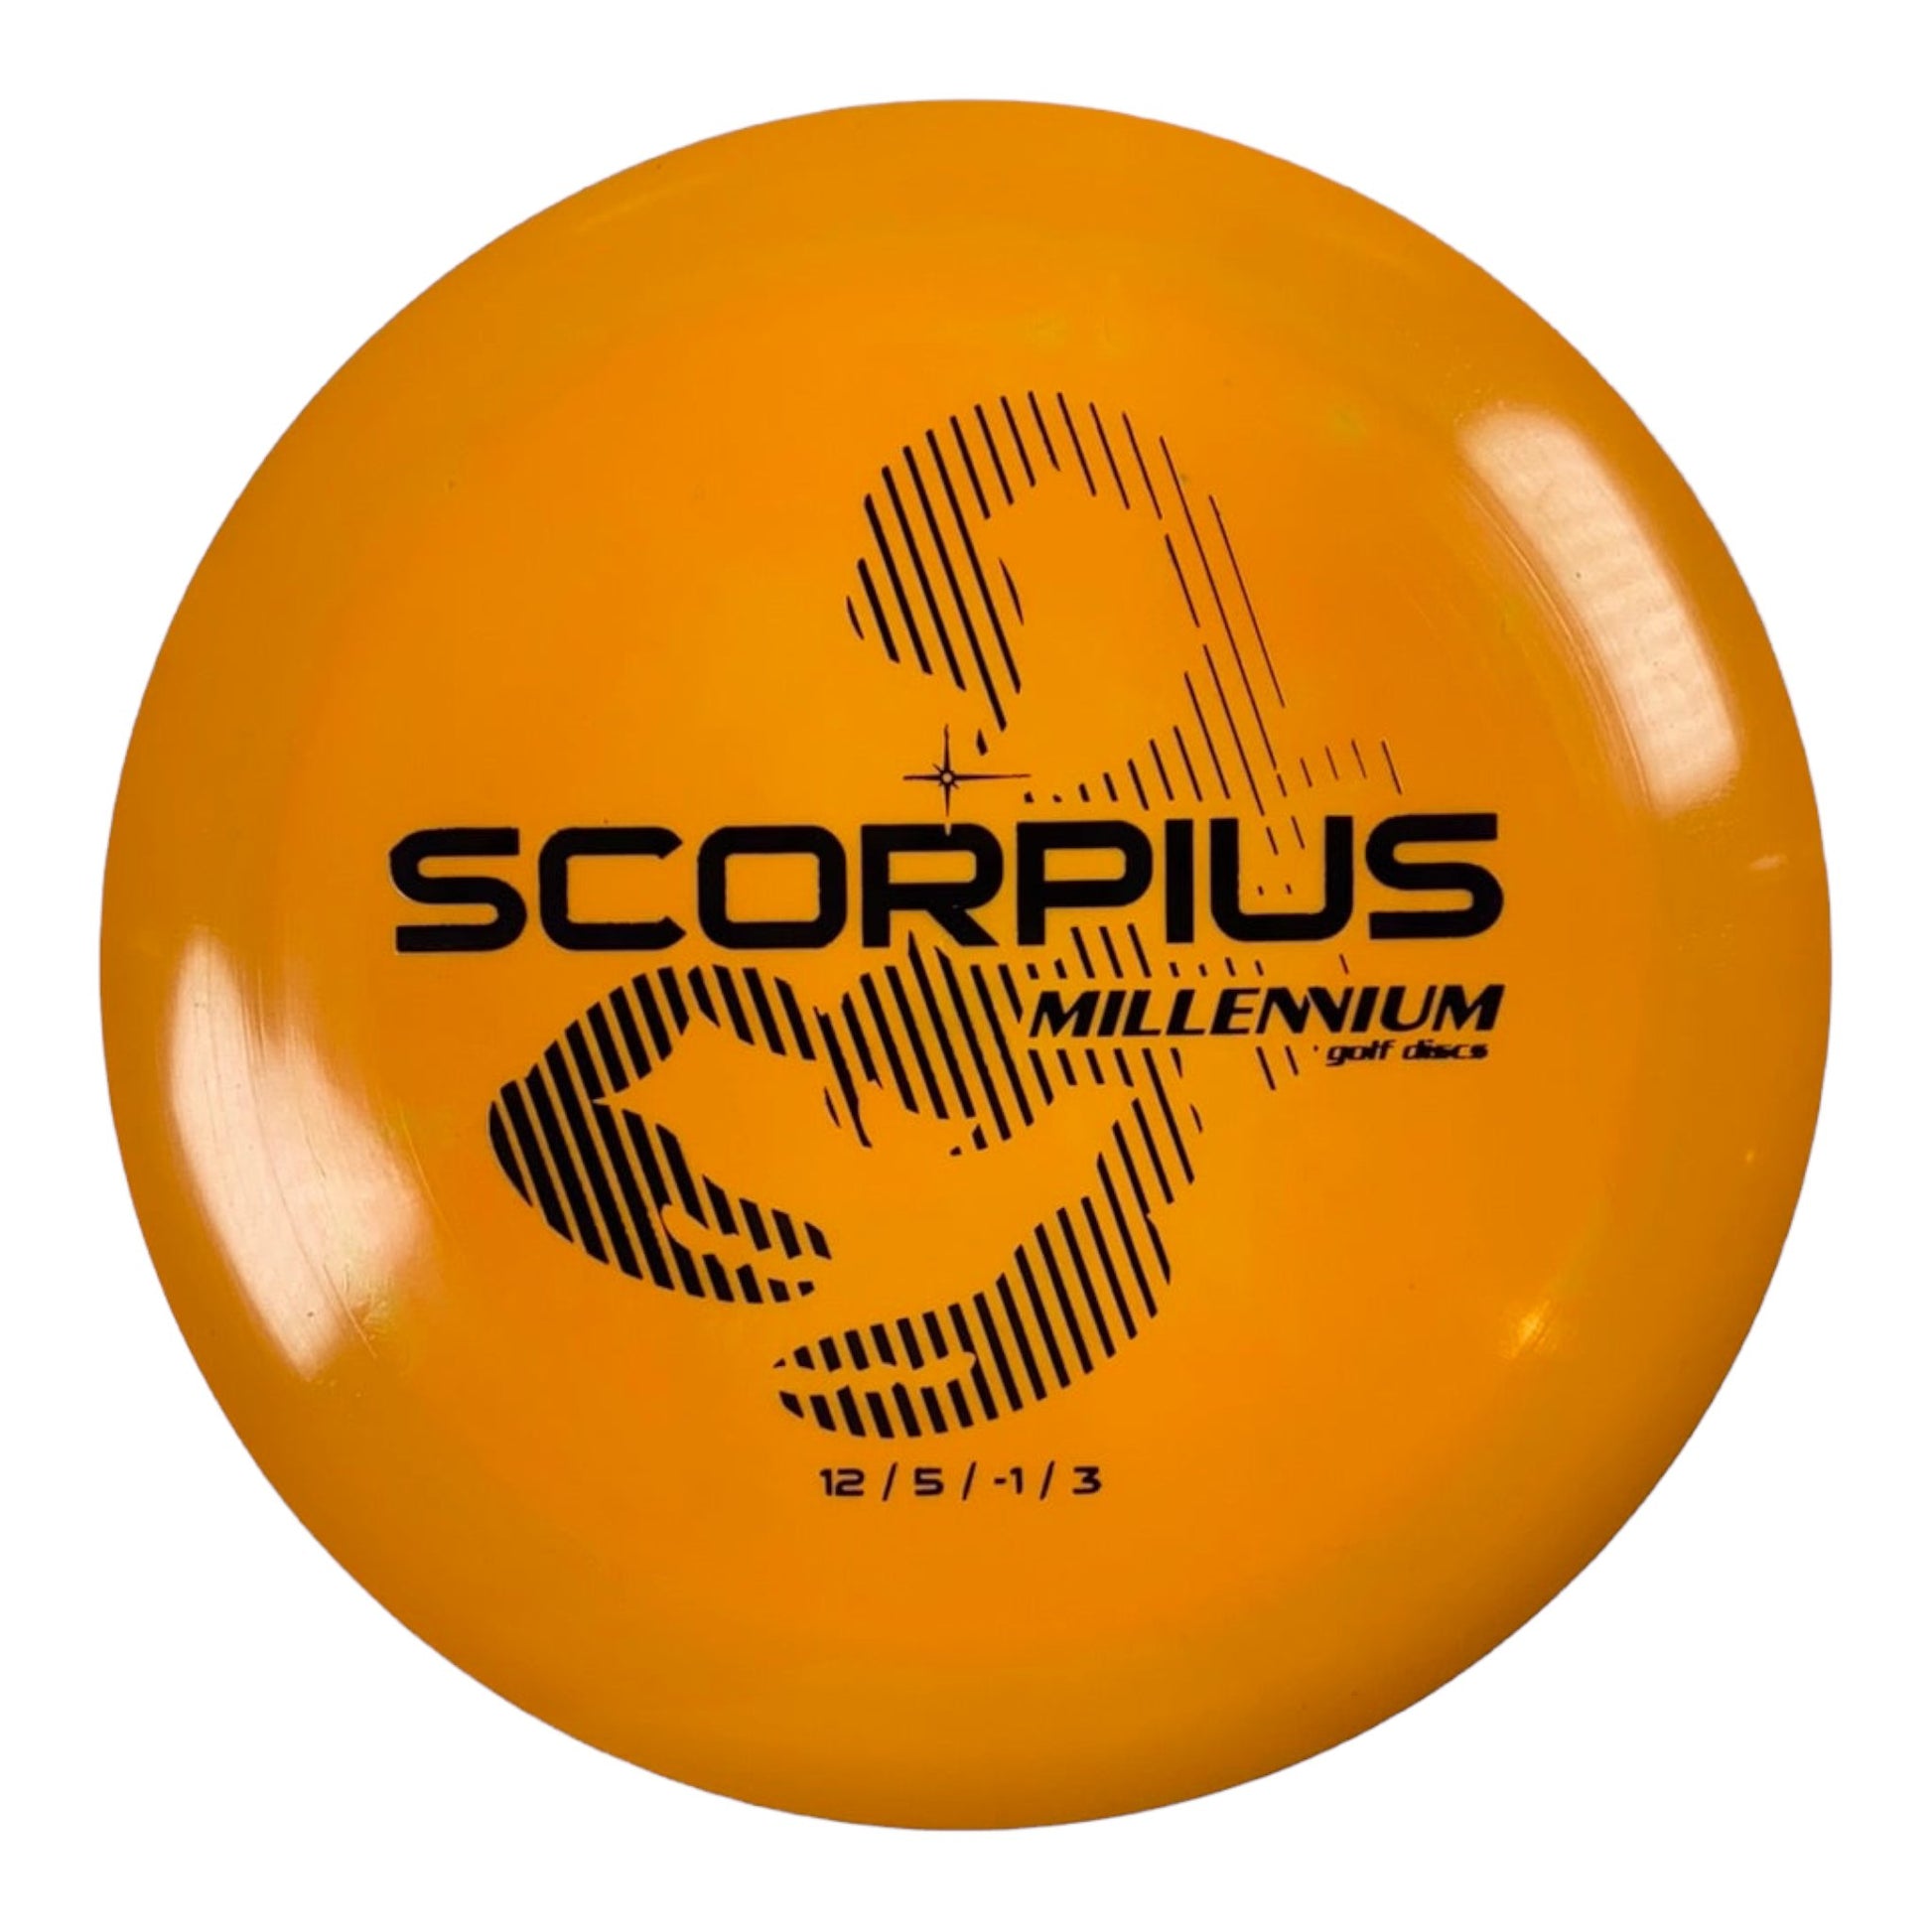 Millennium Golf Discs Scorpius | Standard | Orange/Black 169g Disc Golf